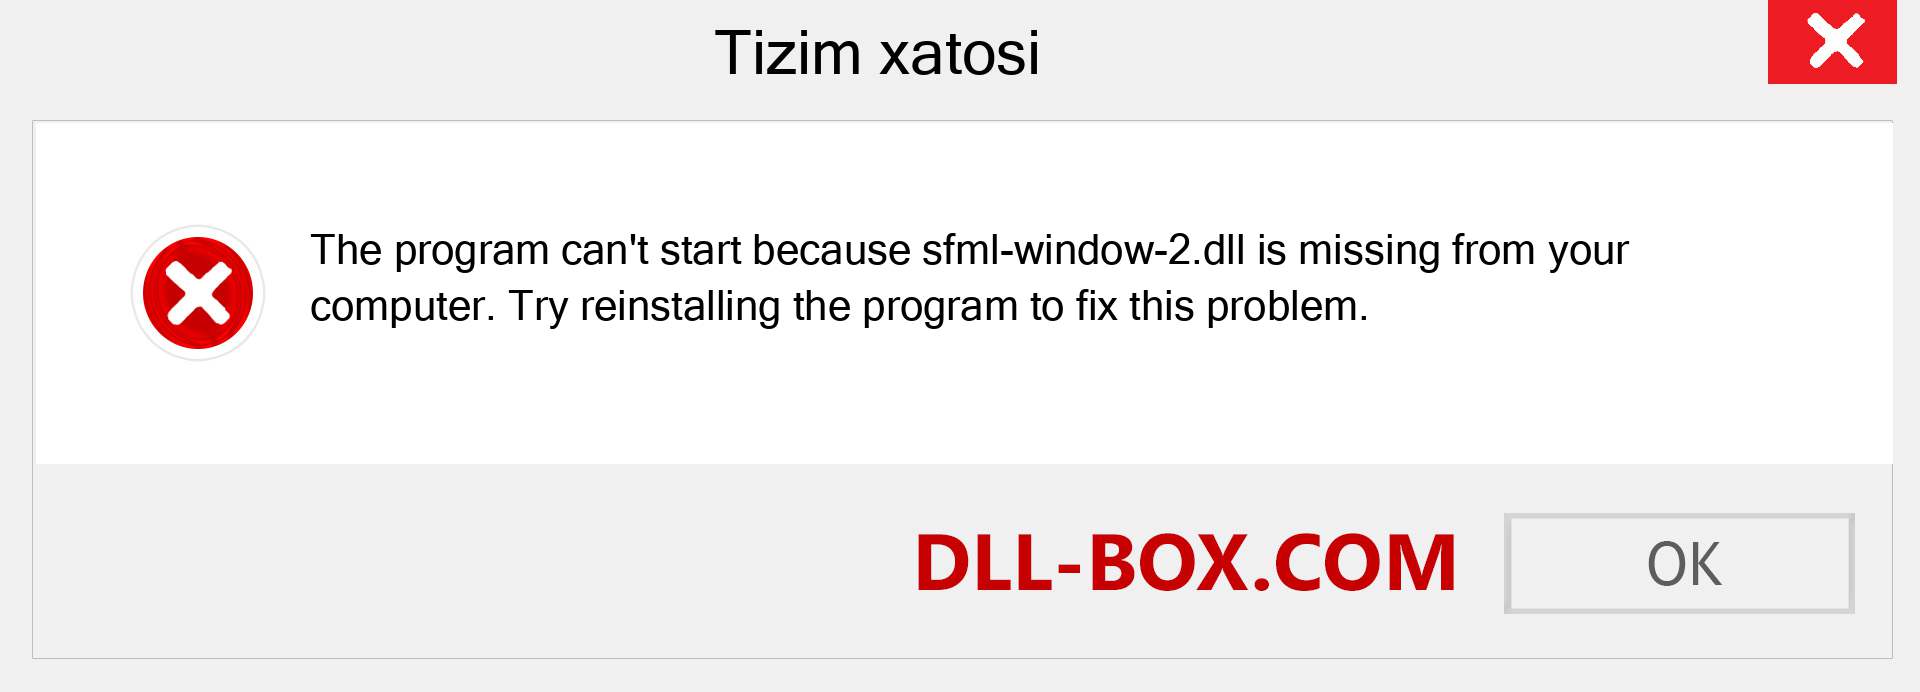 sfml-window-2.dll fayli yo'qolganmi?. Windows 7, 8, 10 uchun yuklab olish - Windowsda sfml-window-2 dll etishmayotgan xatoni tuzating, rasmlar, rasmlar